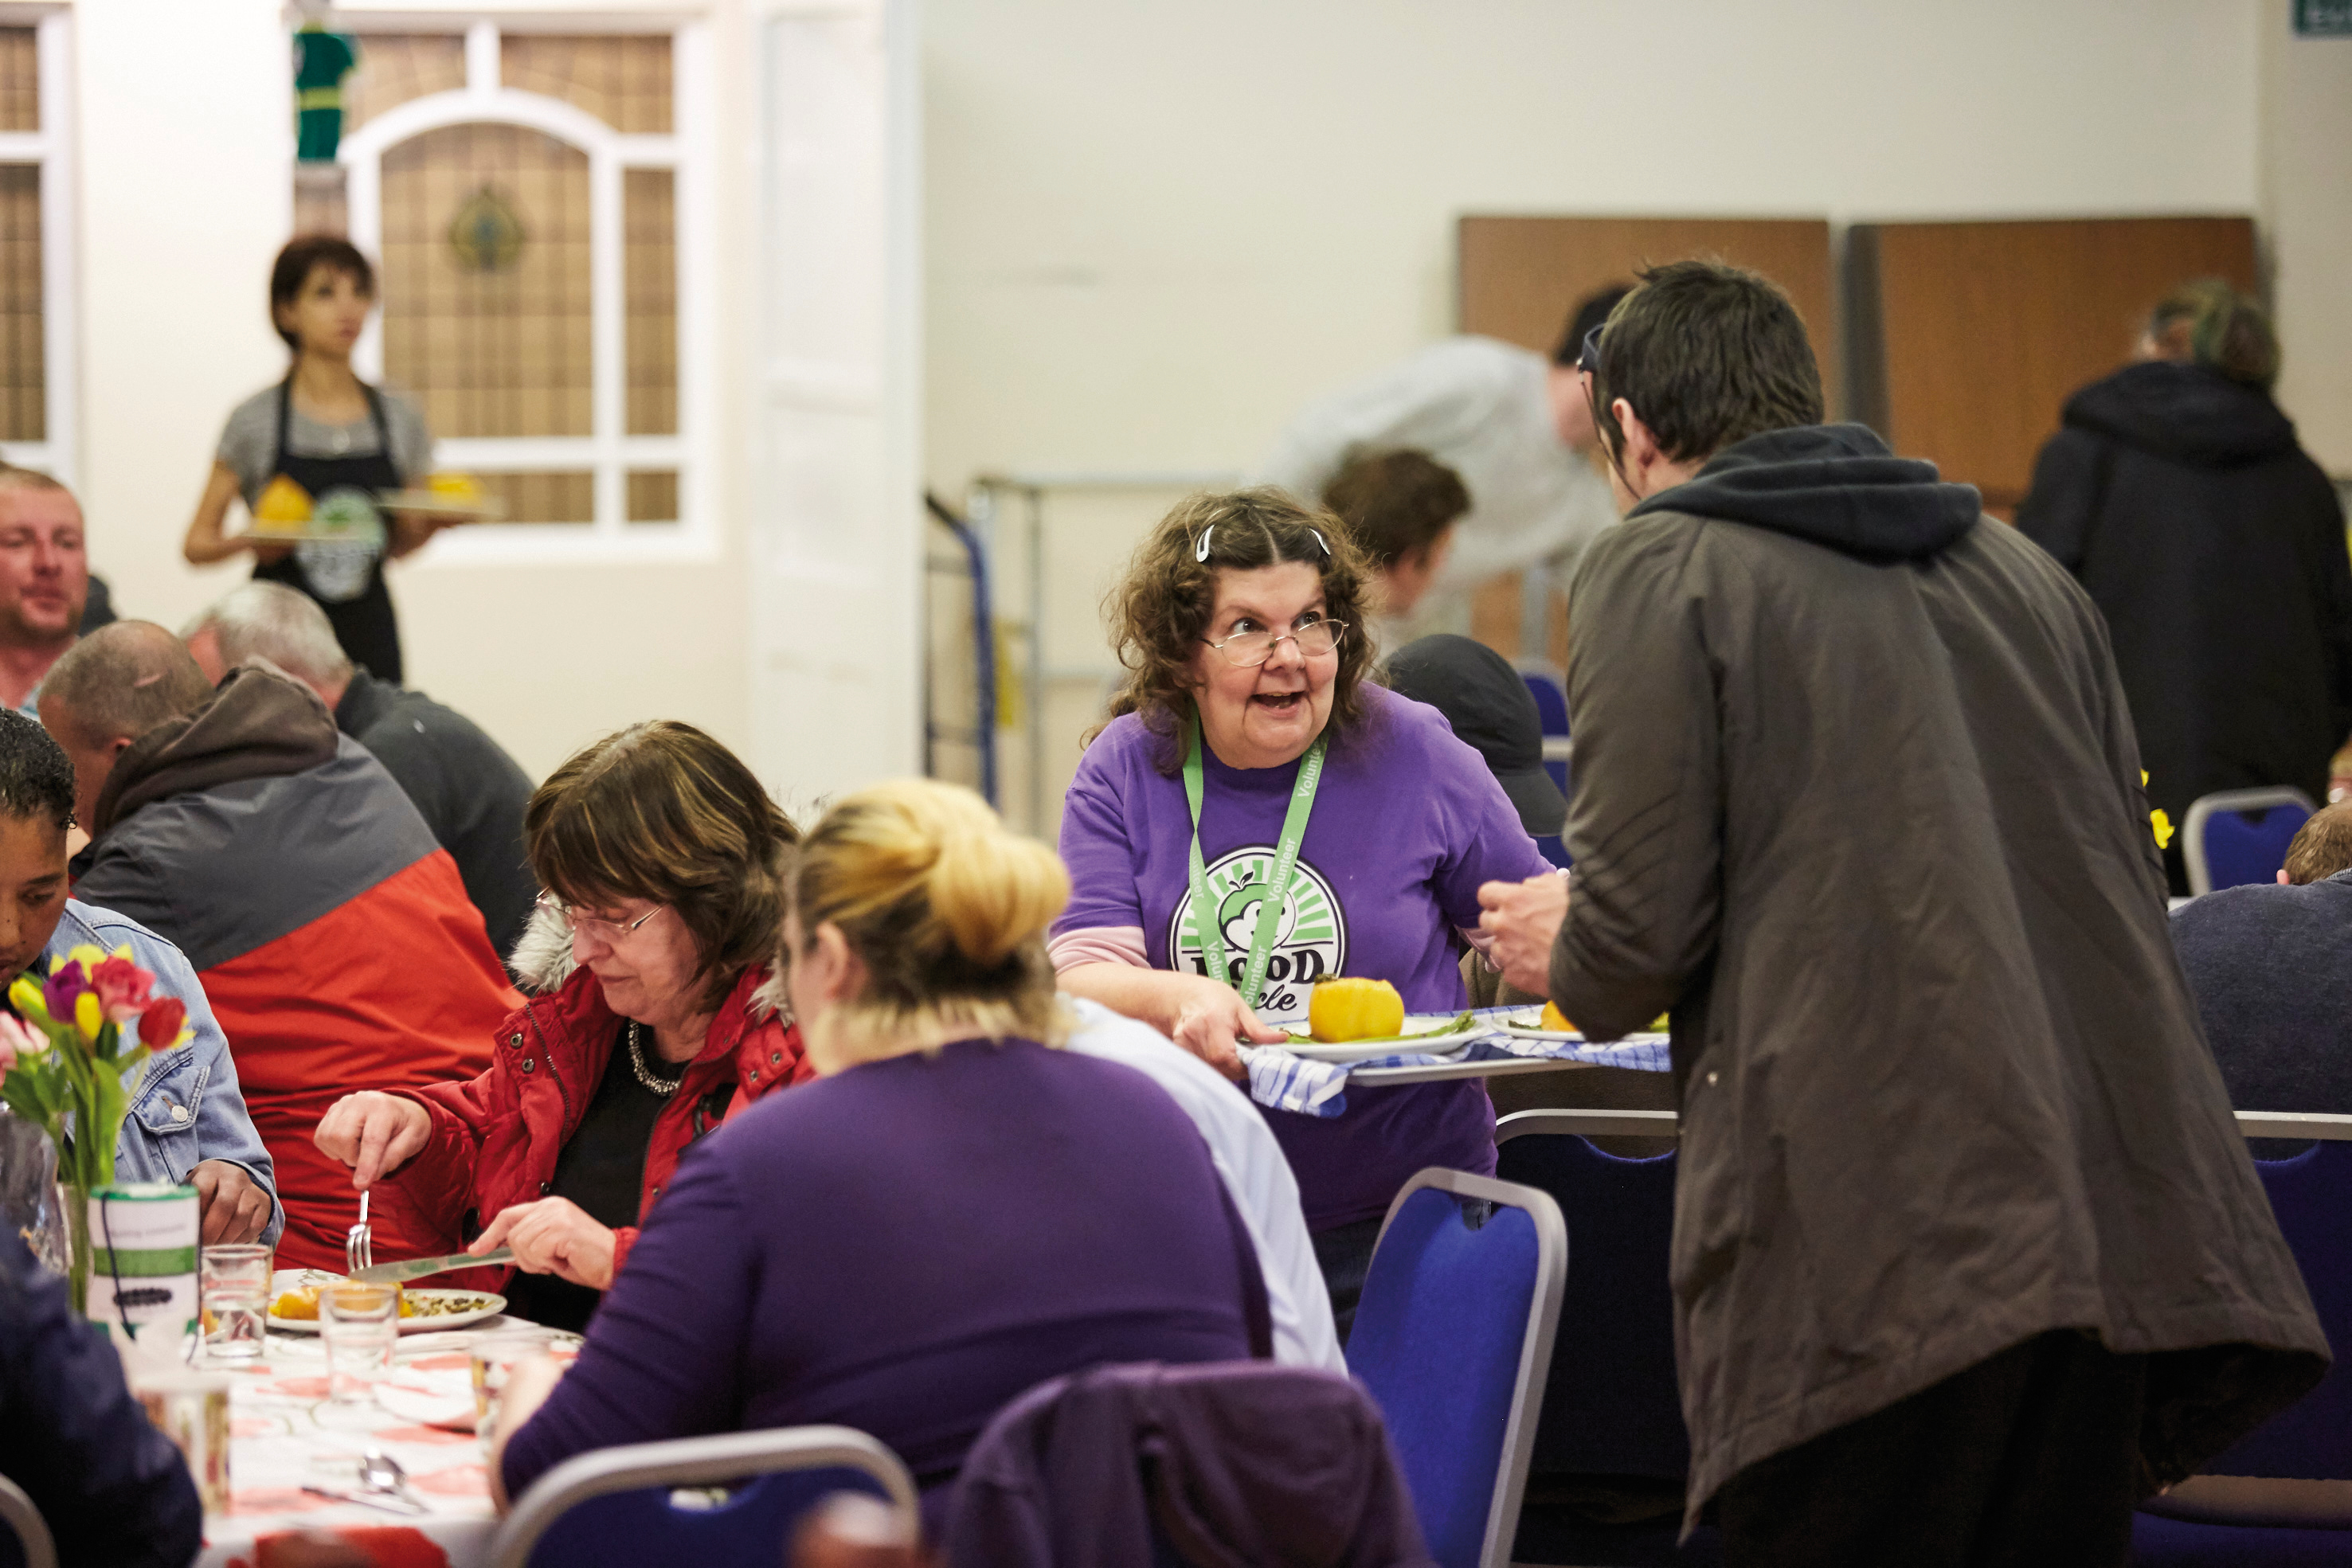 Foodcycle seek volunteers in Norwich